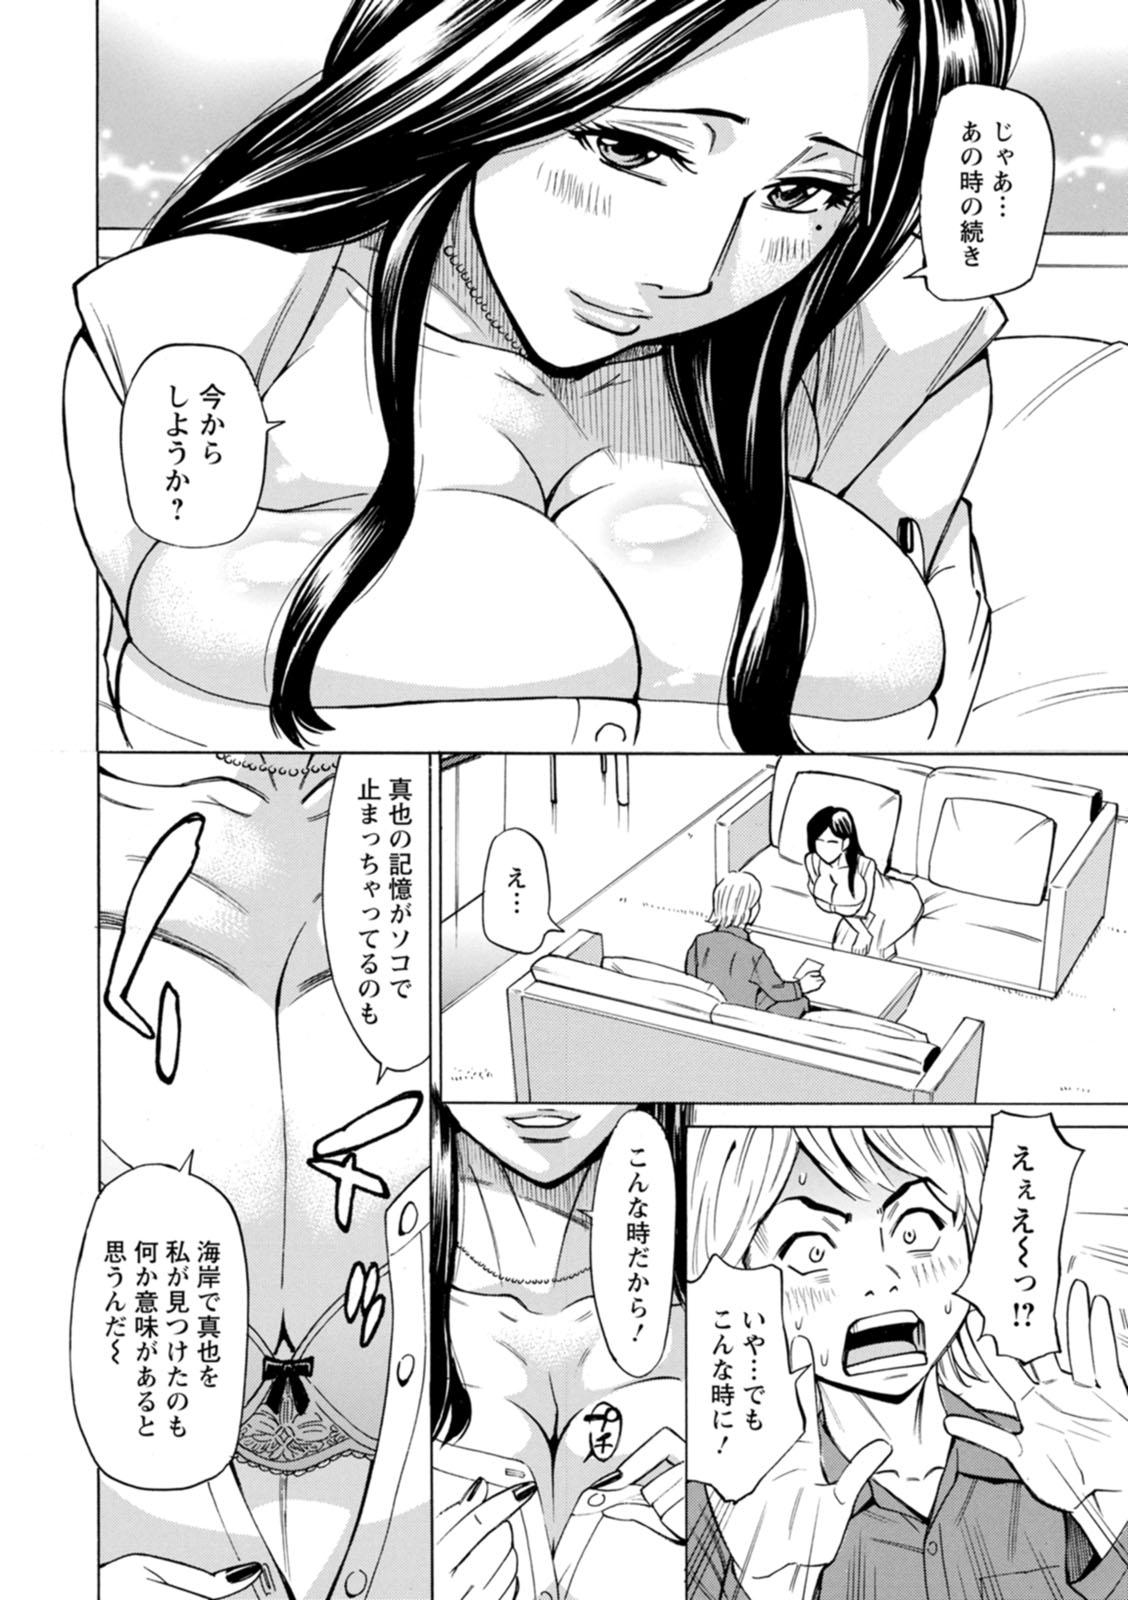 4some Furidashinimodoru Humiliation - Page 12